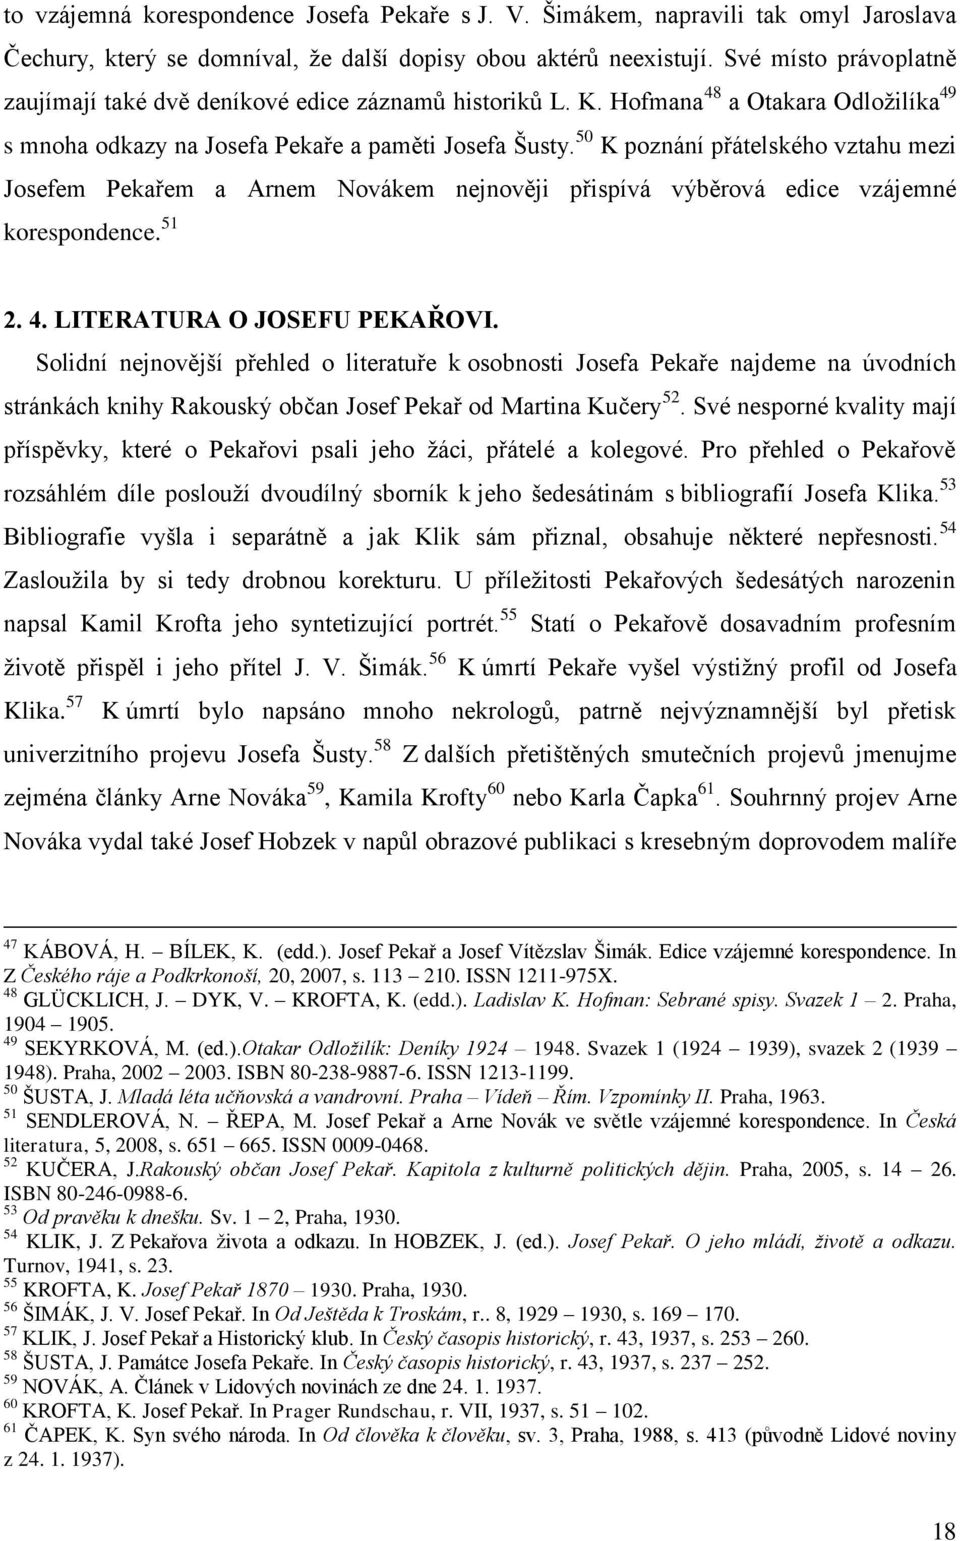 UNIVERZITA PARDUBICE FAKULTA FILOZOFICKÁ BAKALÁŘSKÁ PRÁCE - PDF Free  Download